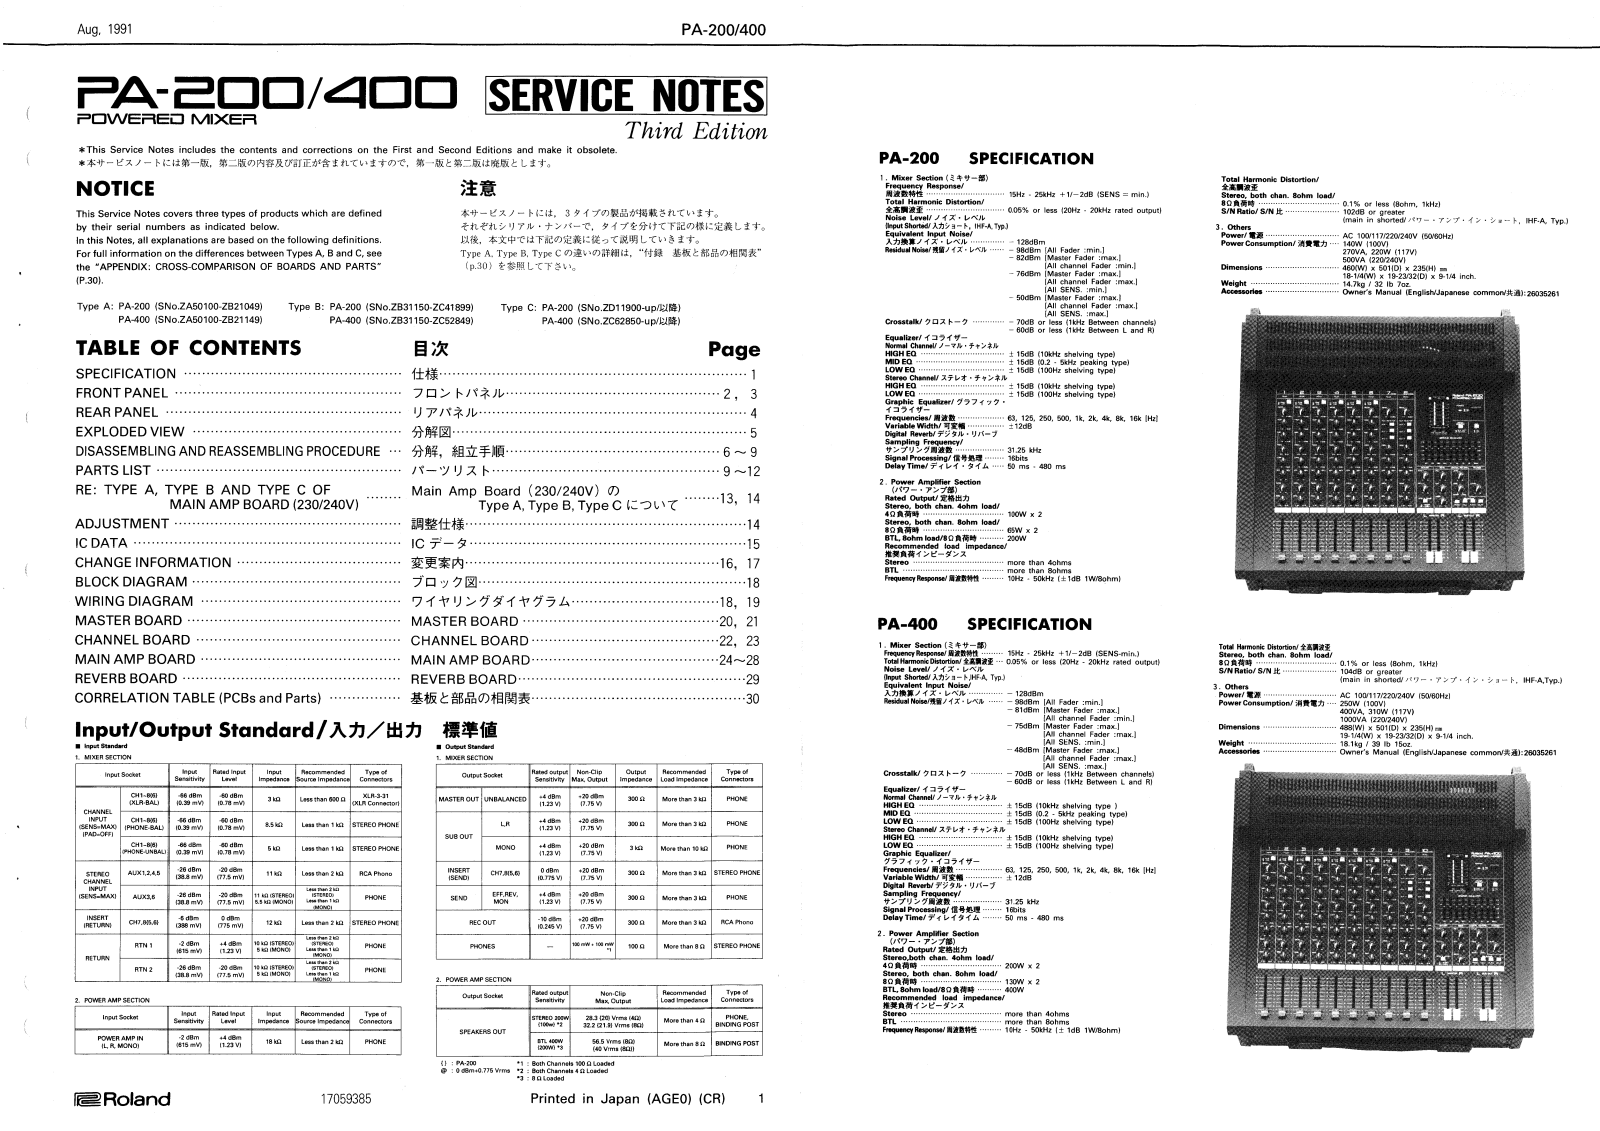 Roland PA-400, PA-200 Service Manual